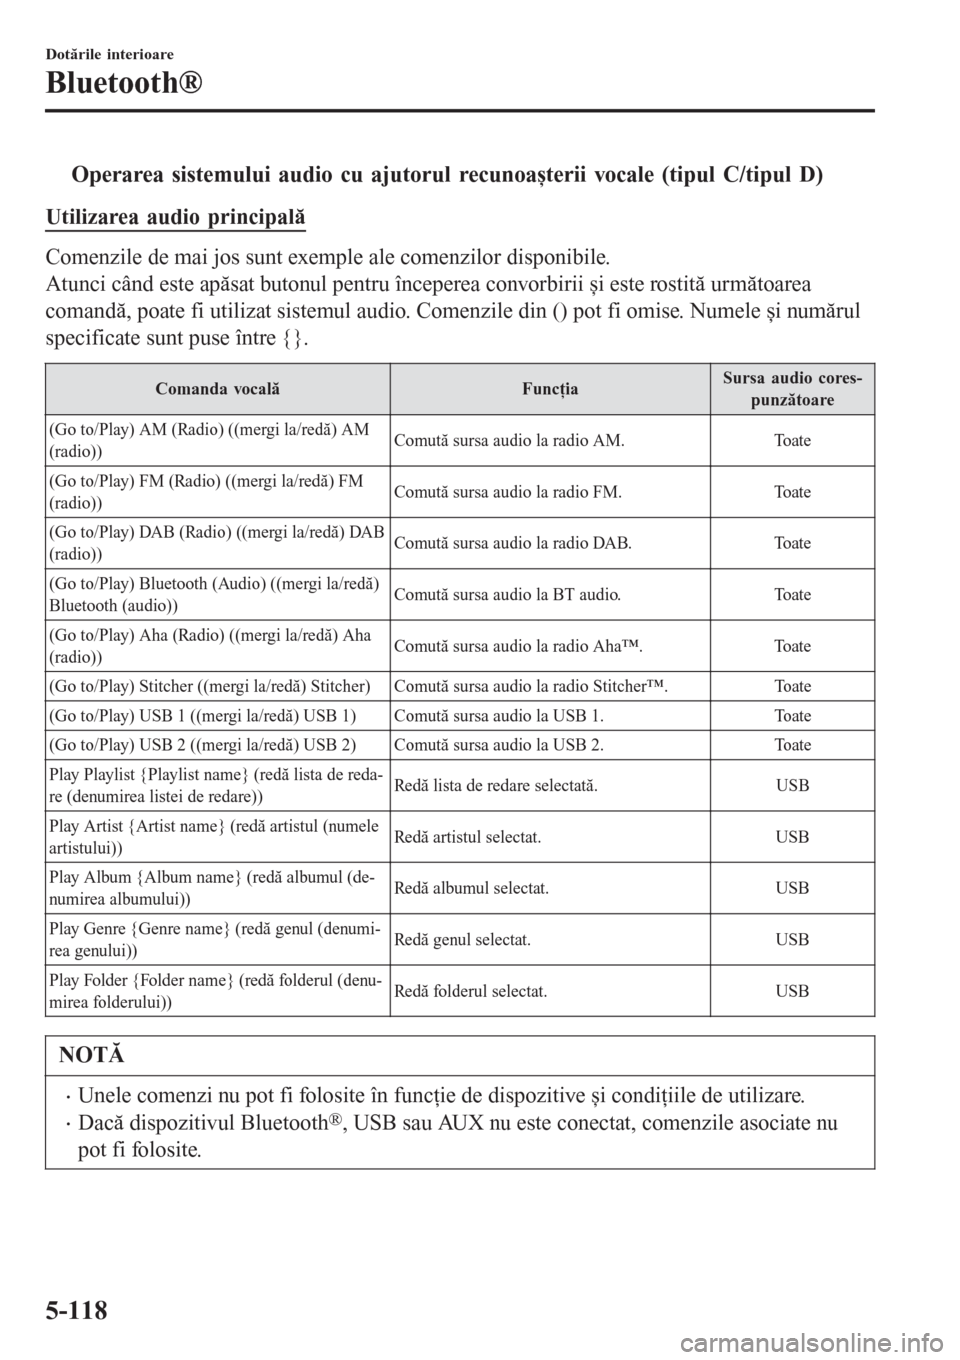 MAZDA MODEL 3 HATCHBACK 2015  Manualul de utilizare (in Romanian) tOperarea sistemului audio cu ajutorul recunoașterii vocale (tipul C/tipul D)
Utilizarea audio principală
Comenzile de mai jos sunt exemple ale comenzilor disponibile.
Atunci când este apăsat buto